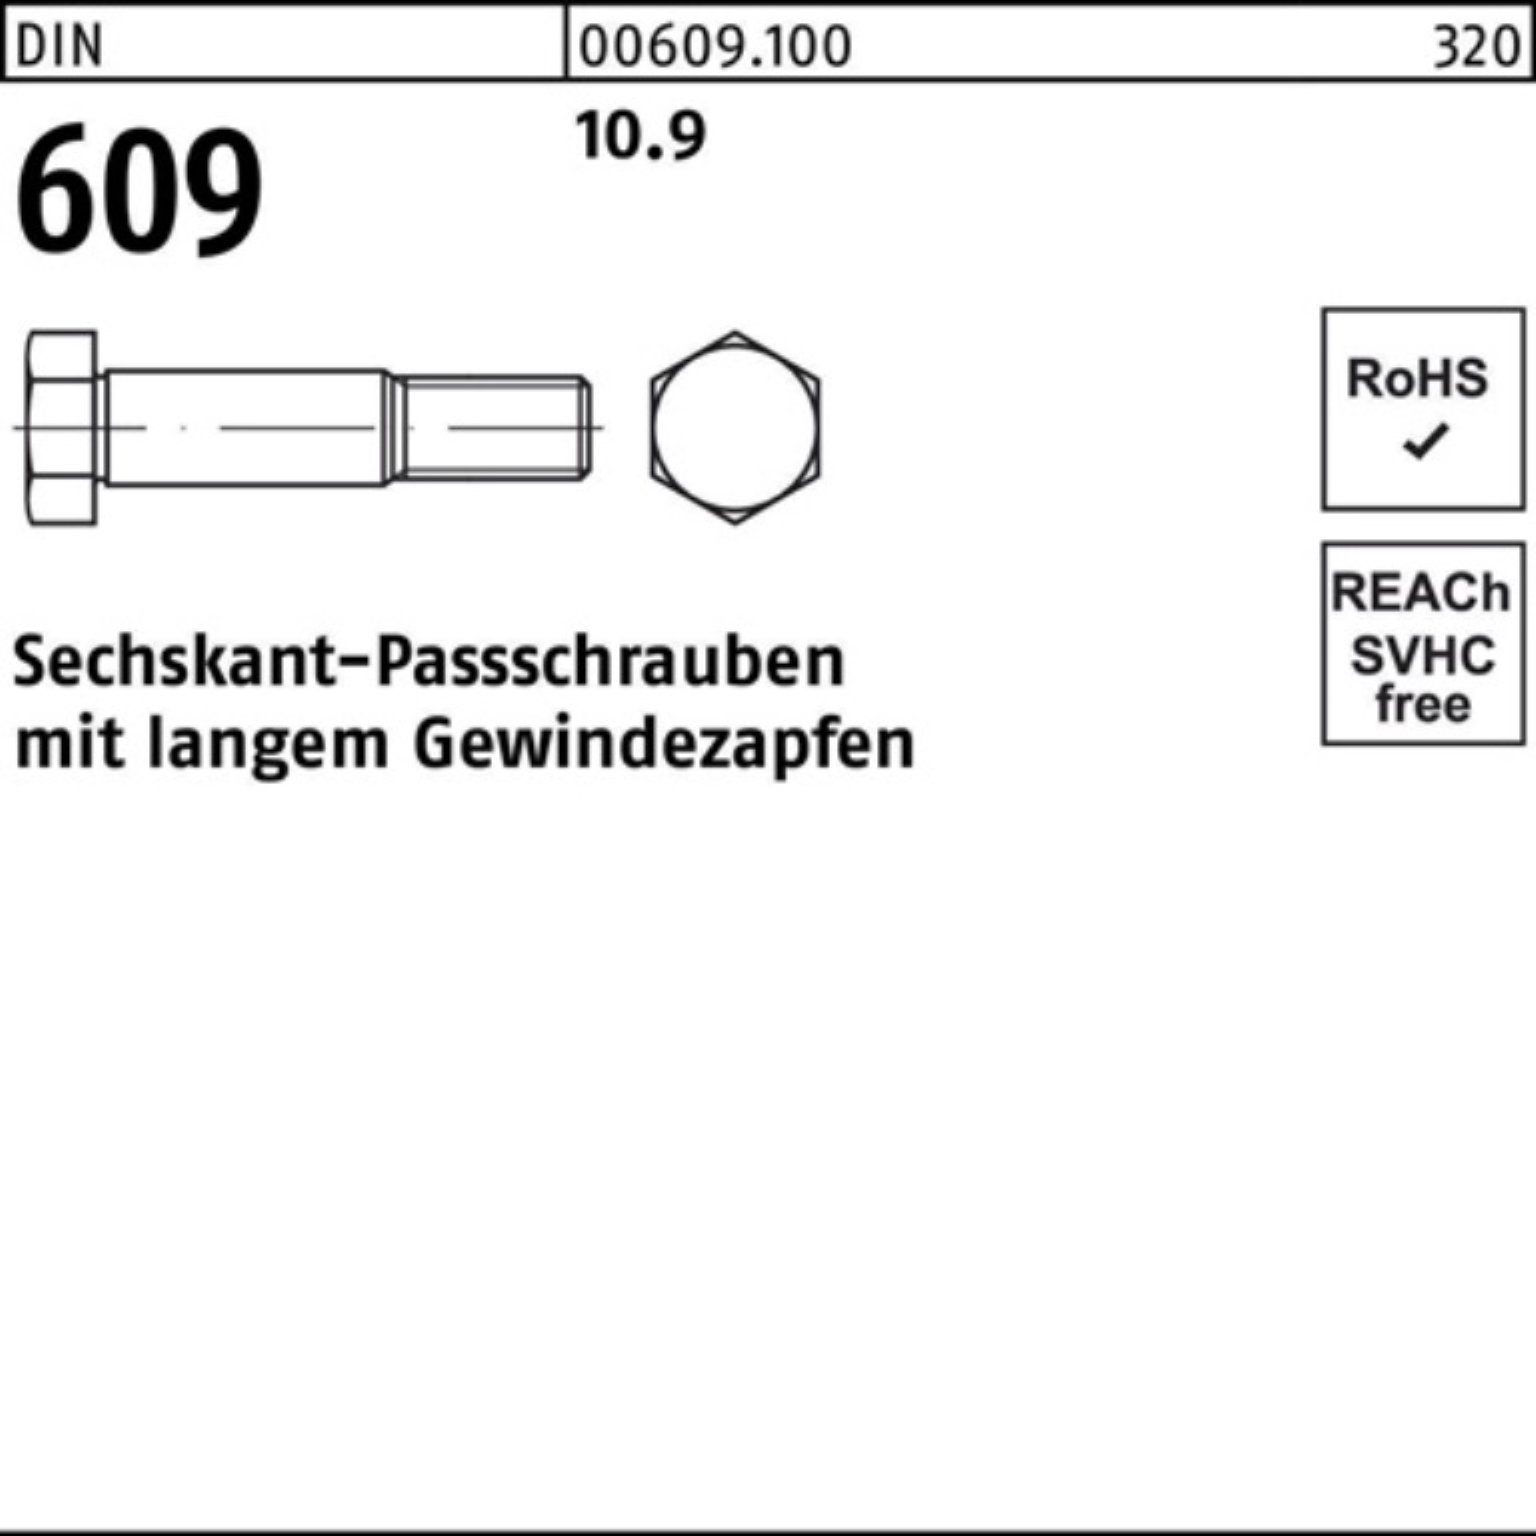 Gewindezapfen Sechskantpassschraube M16x DIN Schraube Reyher Pack 100er 609 langem 60